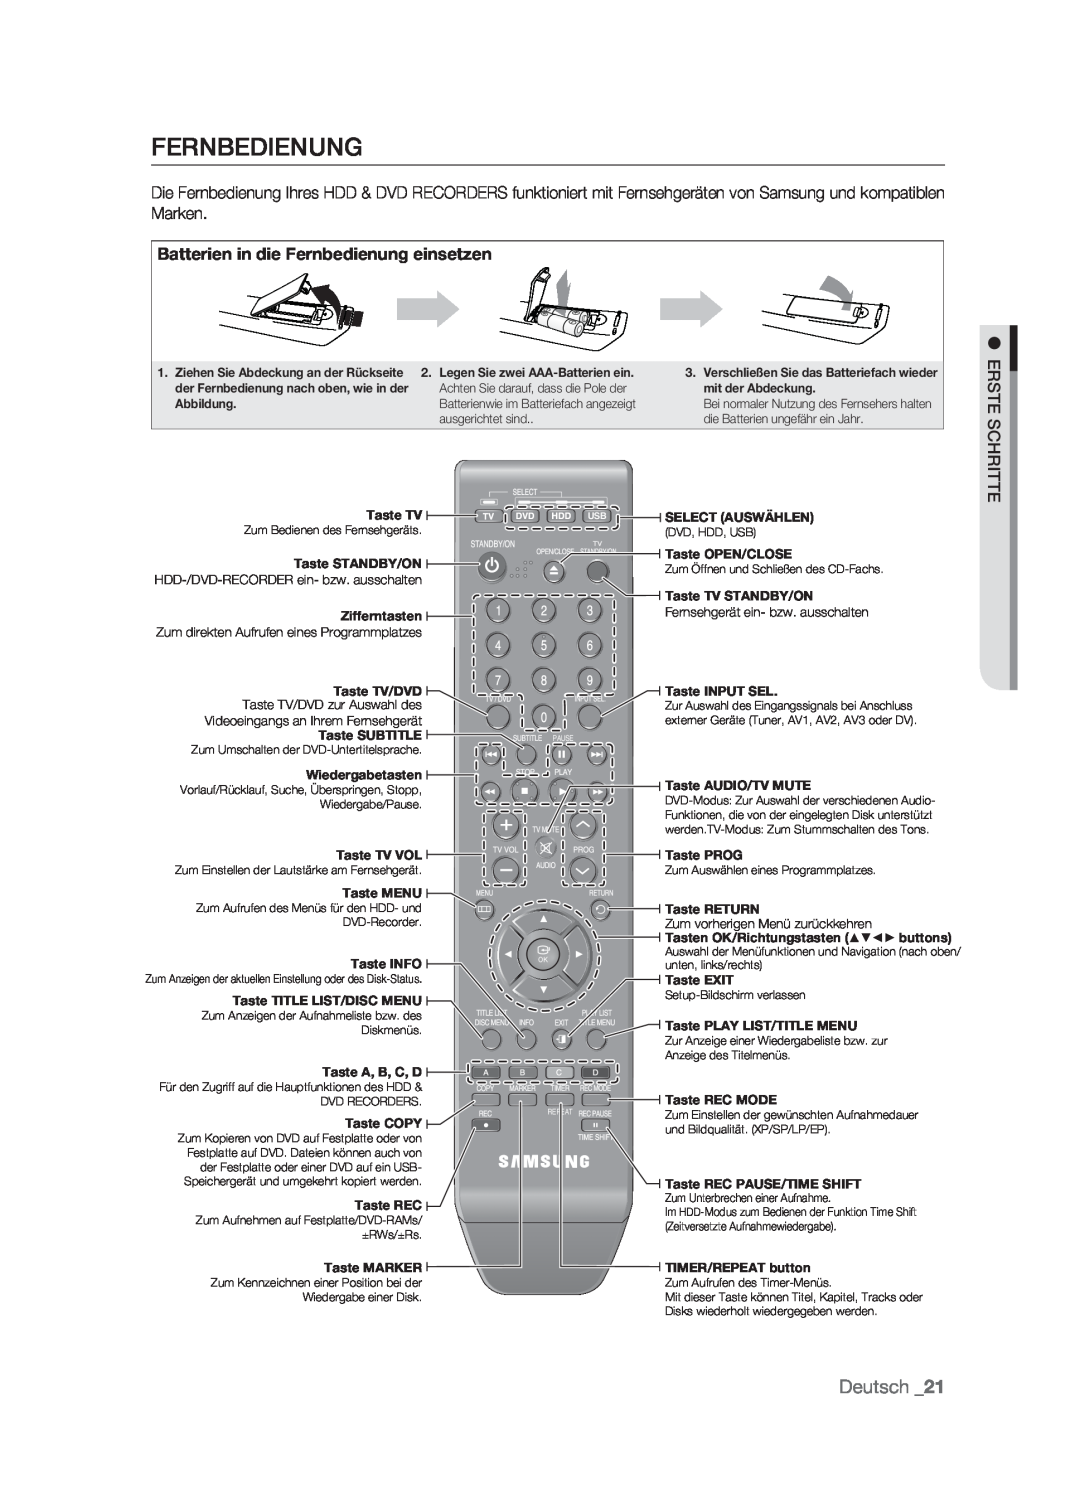 Samsung DVD-HR773/XEB, DVD-HR773/XEN, DVD-HR773/XEG, DVD-HR773/AUS Batterien in die Fernbedienung einsetzen, Deutsch 